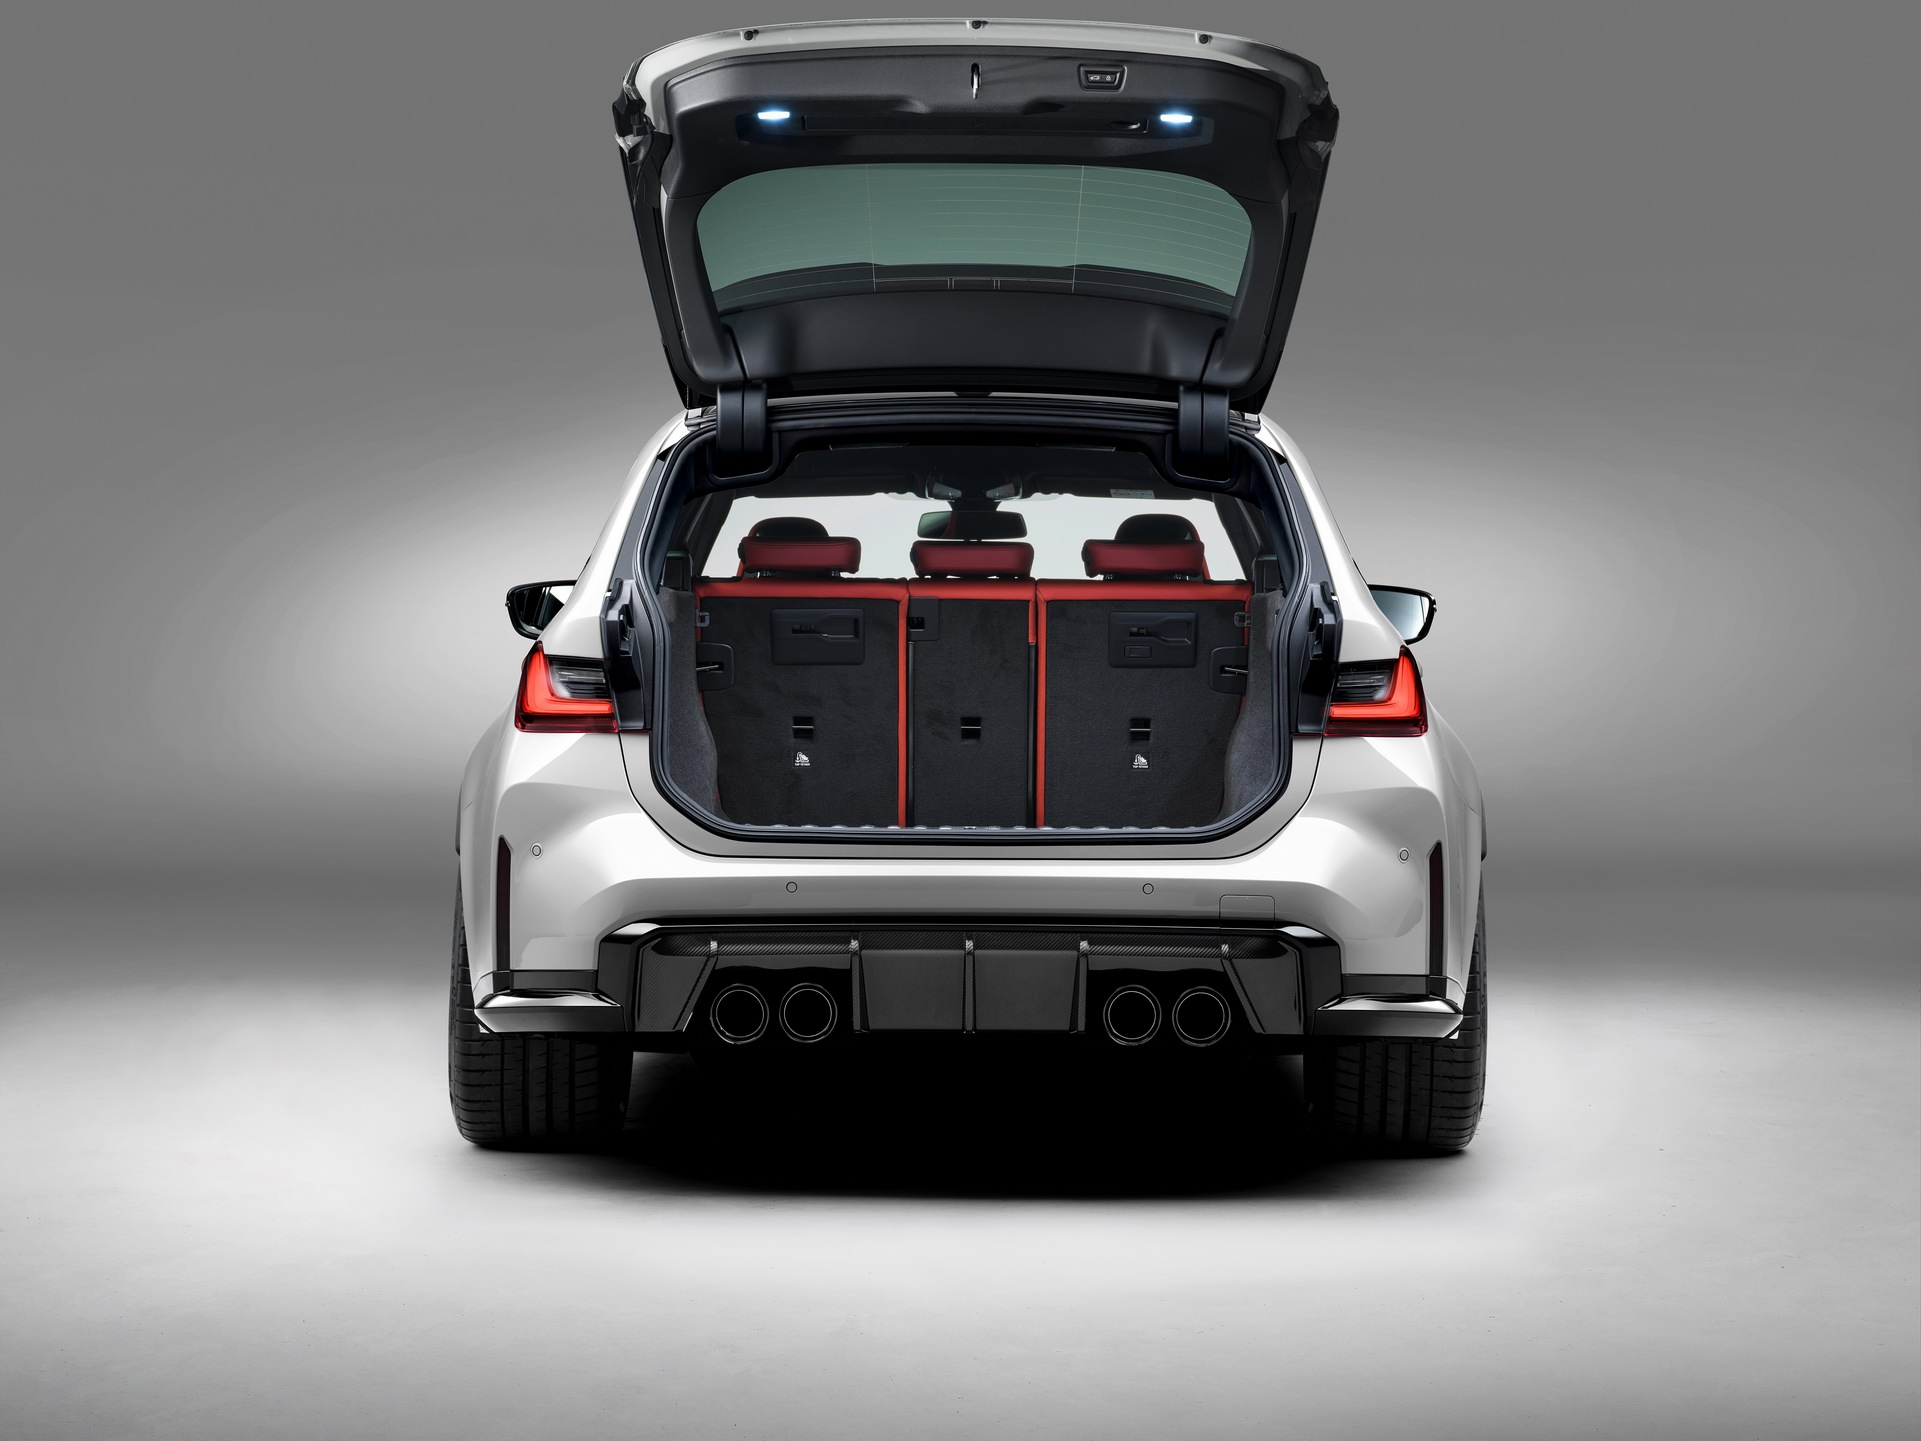 2023 BMW M3 Touring tanıtıldı: 503 hp güç, dört tekerlekten çekiş, 280 km/s son hız